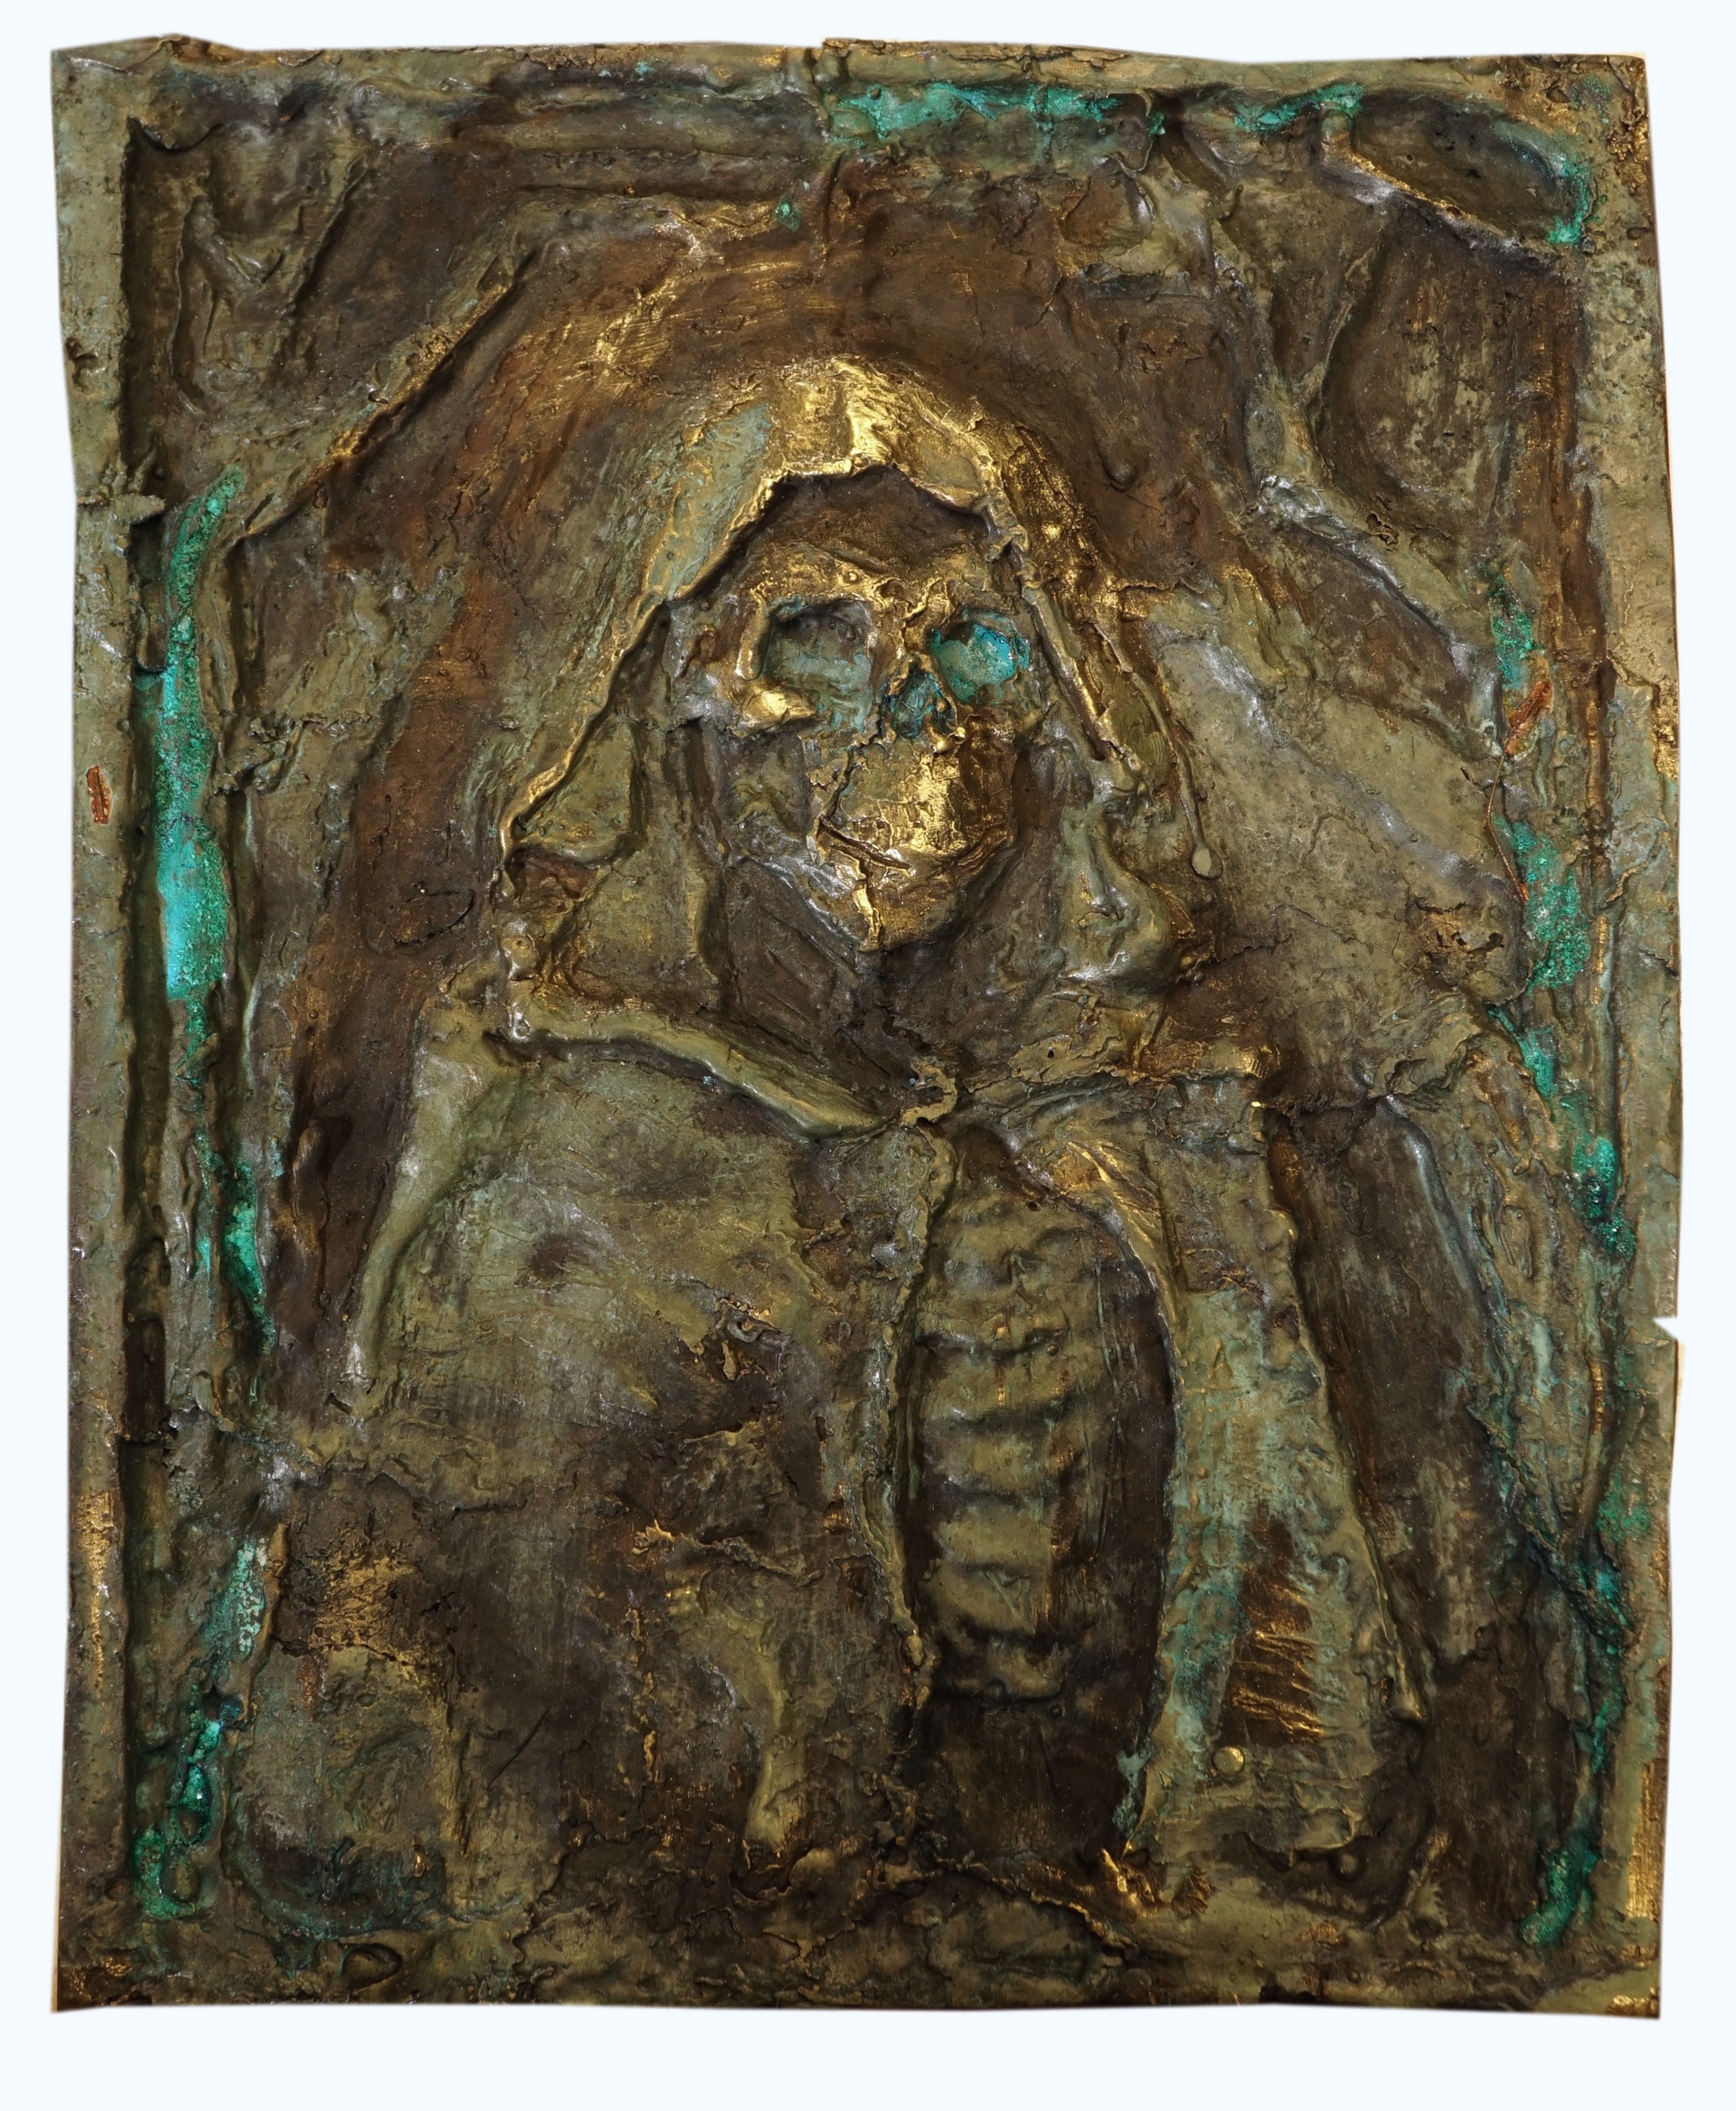 J. Osika - zdjęcie przedstawia płaskorzeźbę, kościotrupa w pelerynie, wykonana z mosiądzu z czarno-zieloną patyną.